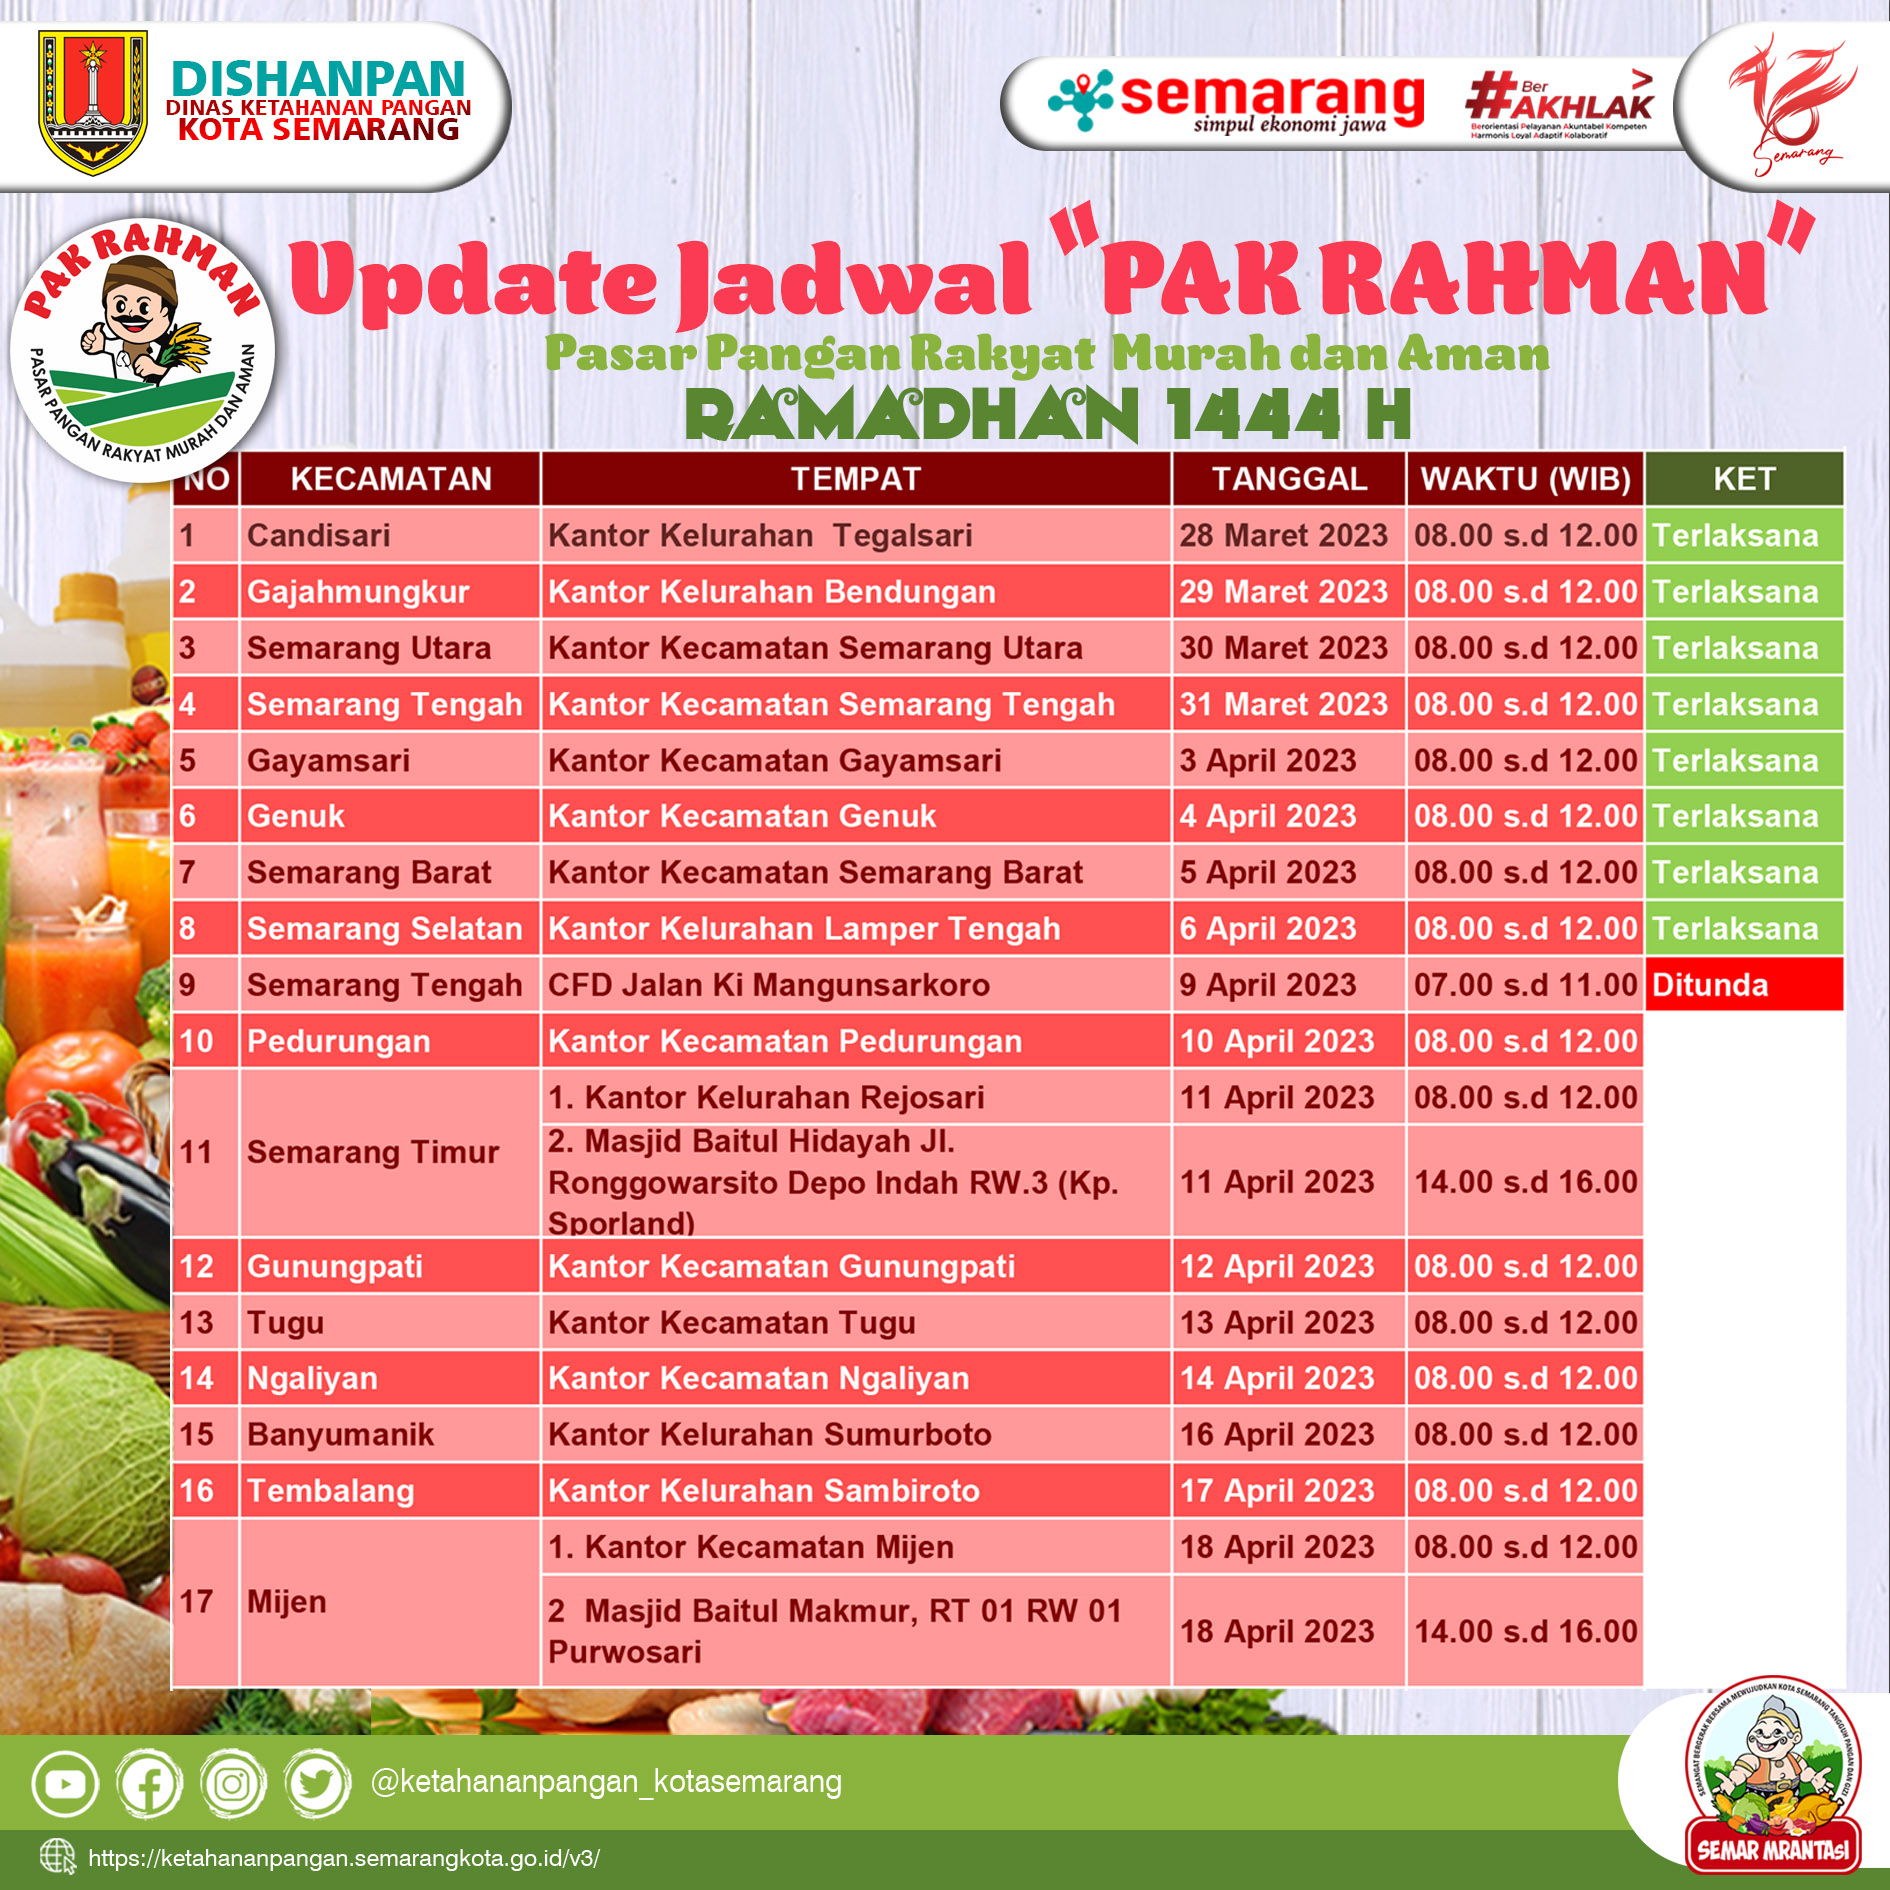 Update Jadwal Pasar Pangan Rakyat Murah dan Aman (PAK RAHMAN) Safari Ramadhan 1444H